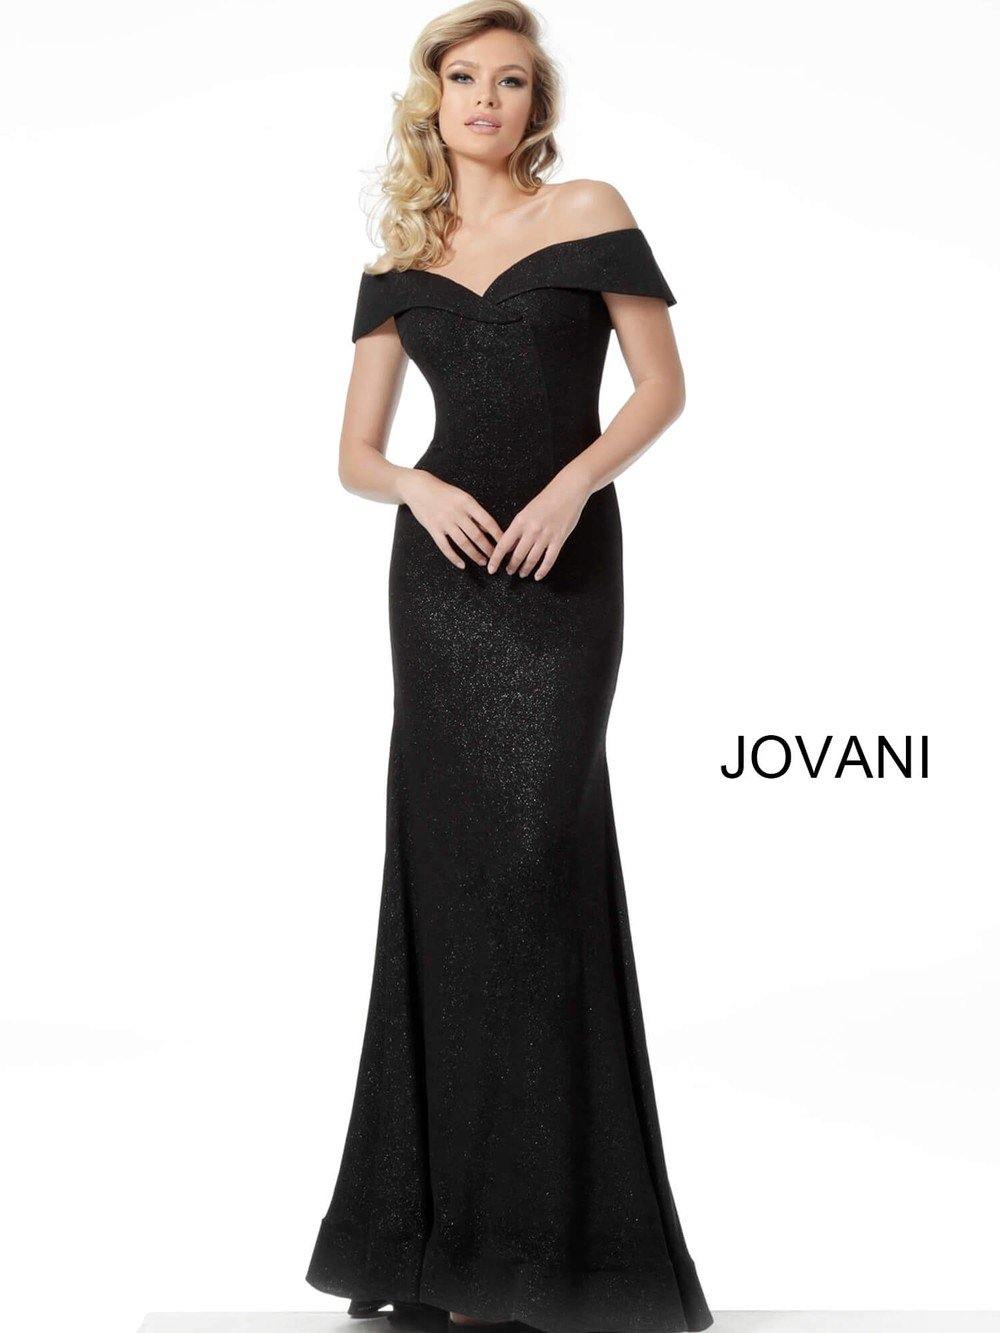 Jovani Long Dress Prom Formal JVN64533  - The Dress Outlet